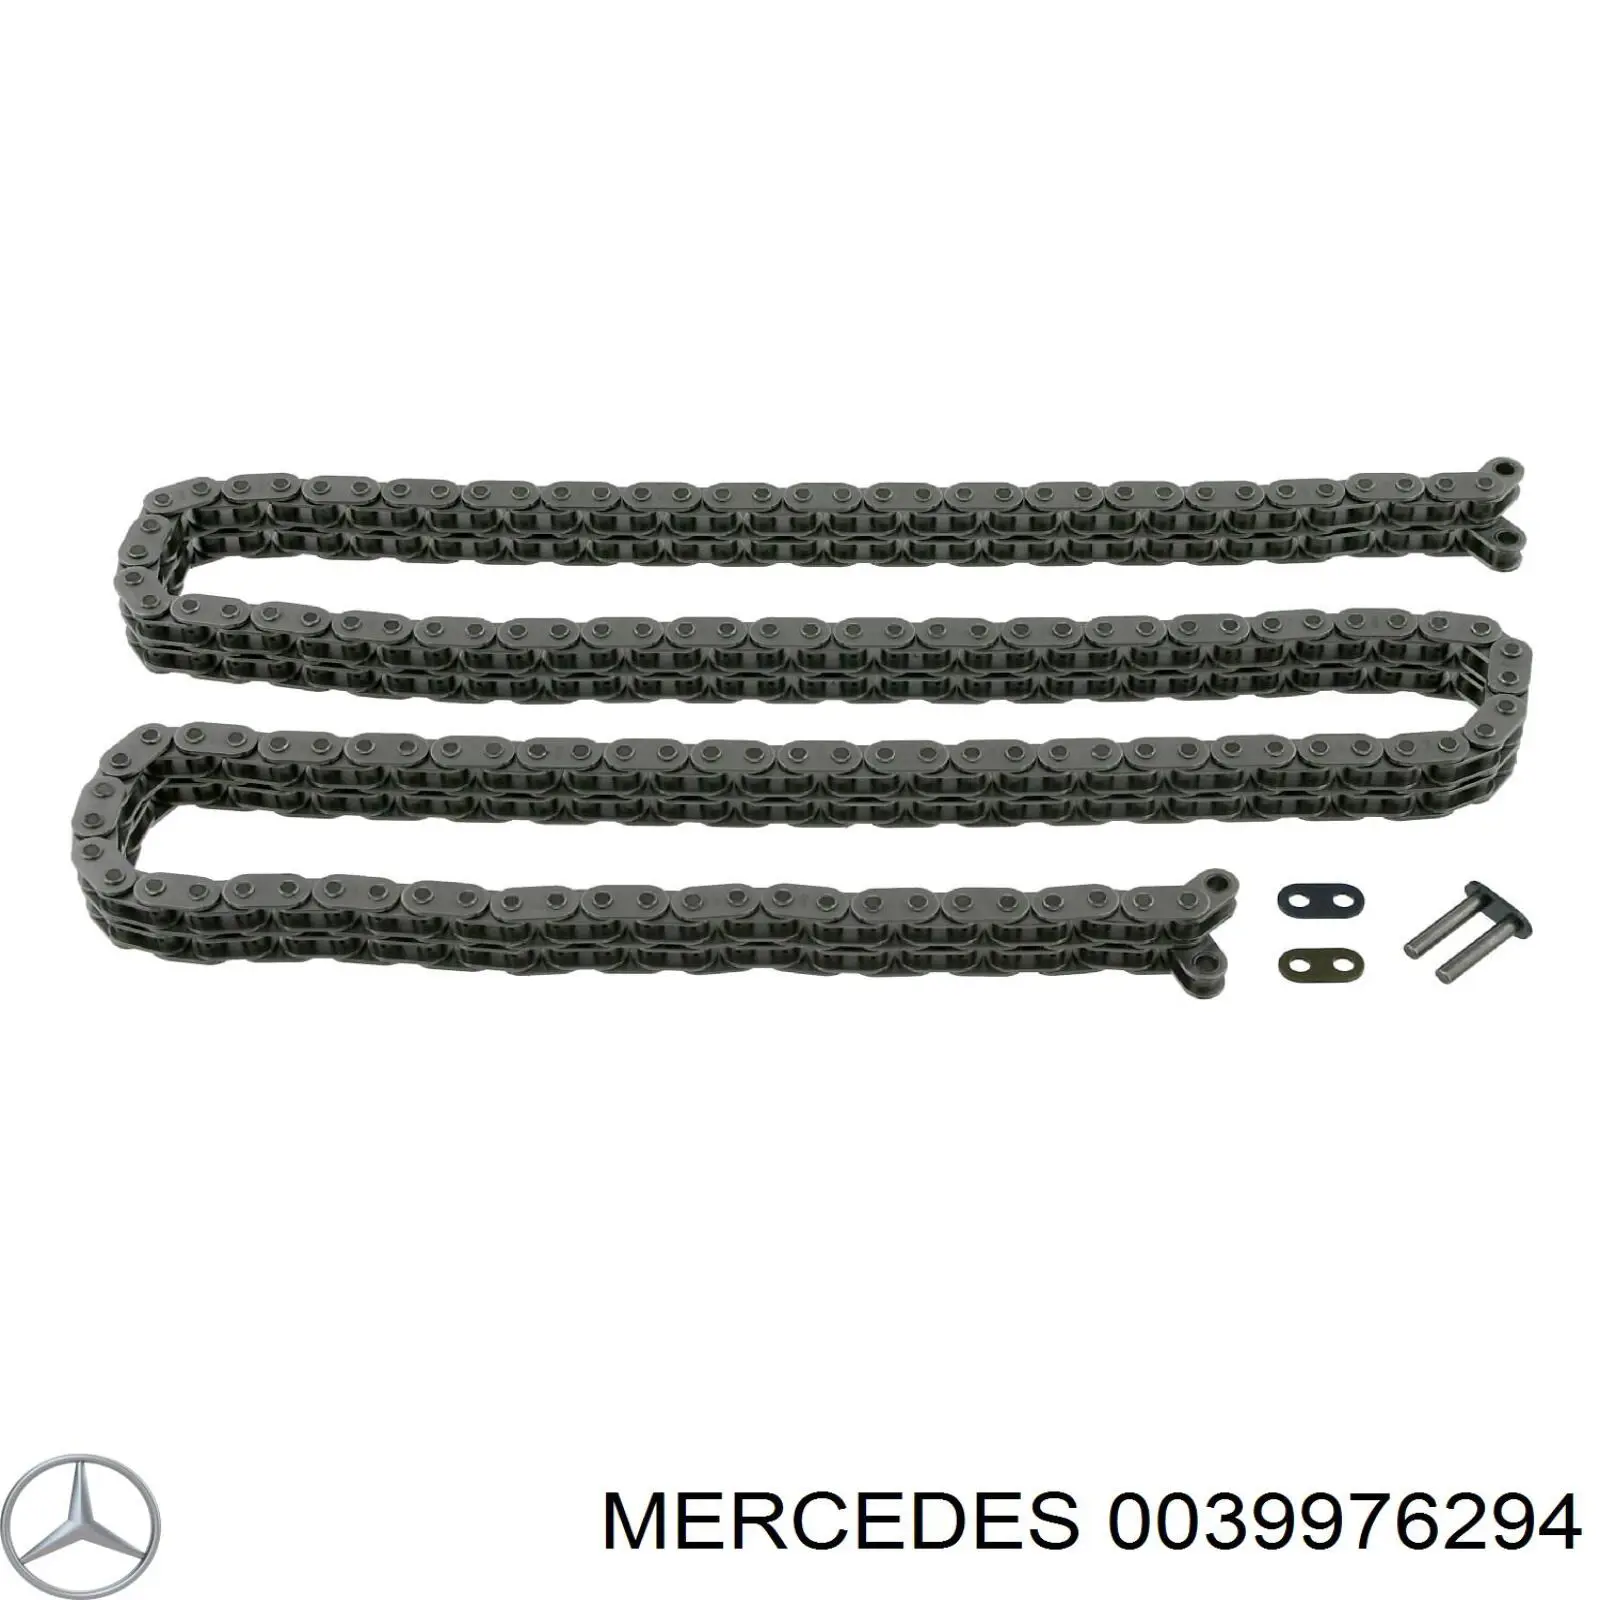 0039976294 Mercedes цепь грм